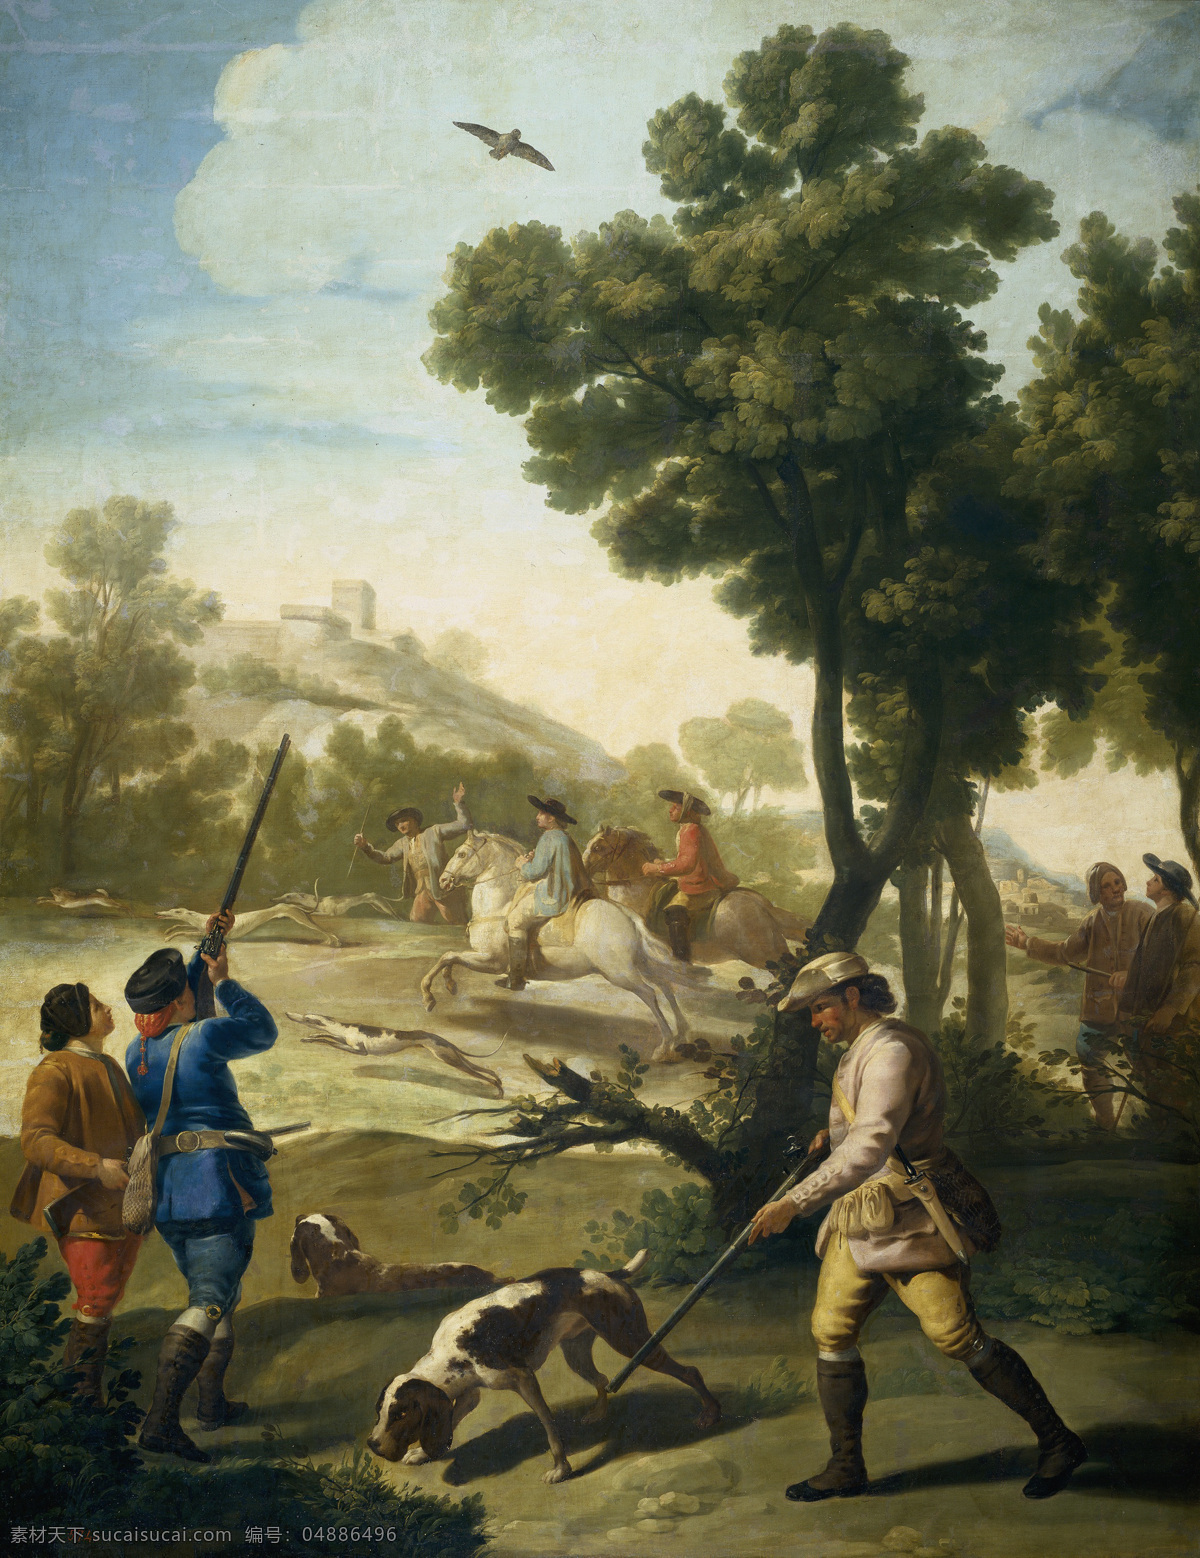 弗朗西斯科 戈雅 作品 狩猎 打猎 狗 火器 枪 艺术流派 马 普拉多 浪漫主义 西班牙画家 绘画书法 文化艺术